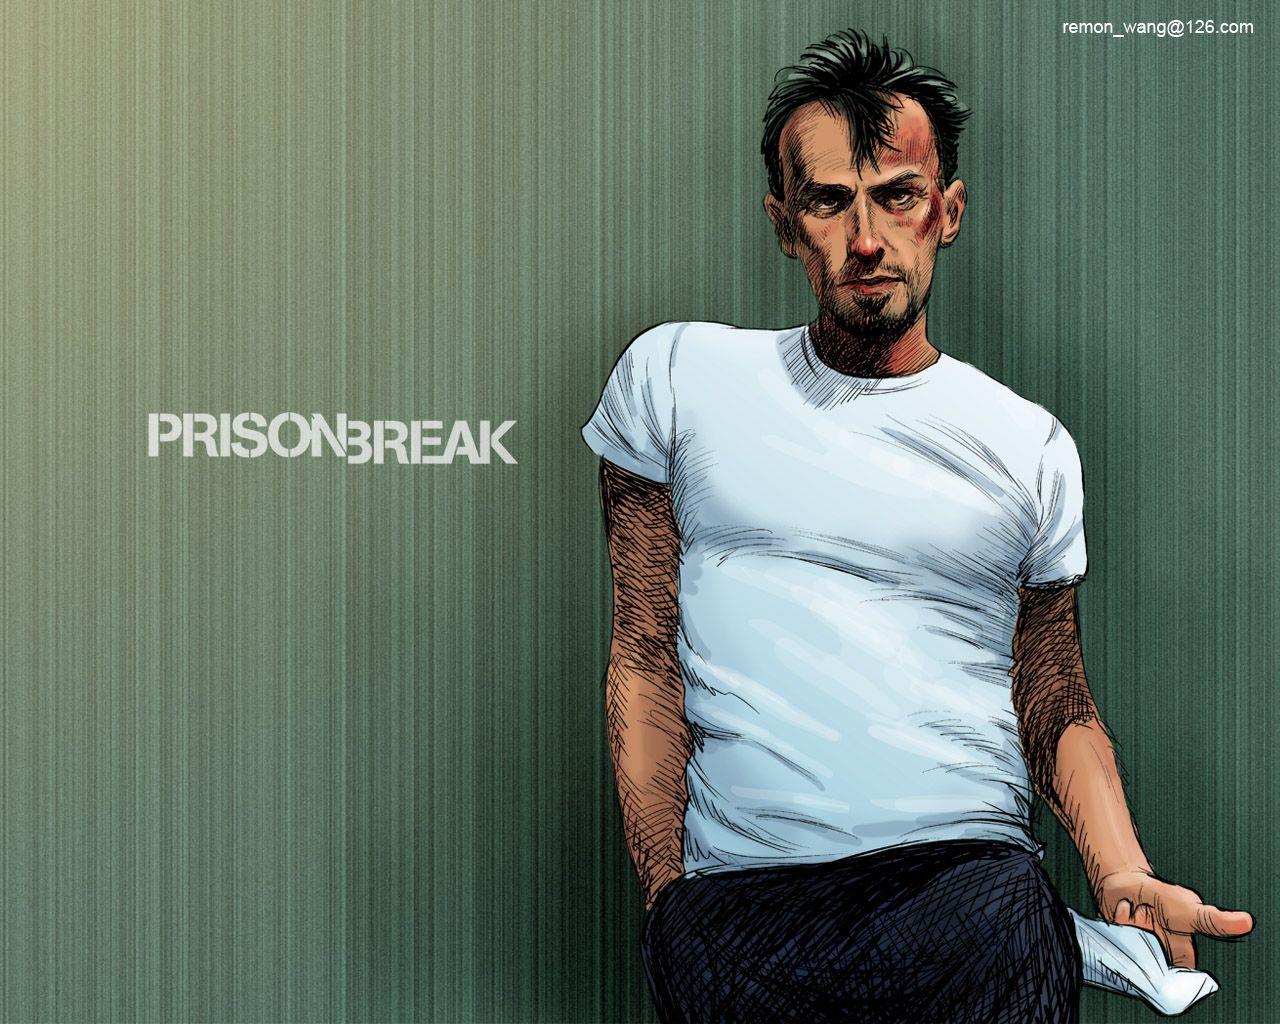 T Bag. Prison Break Prison Break, Prison